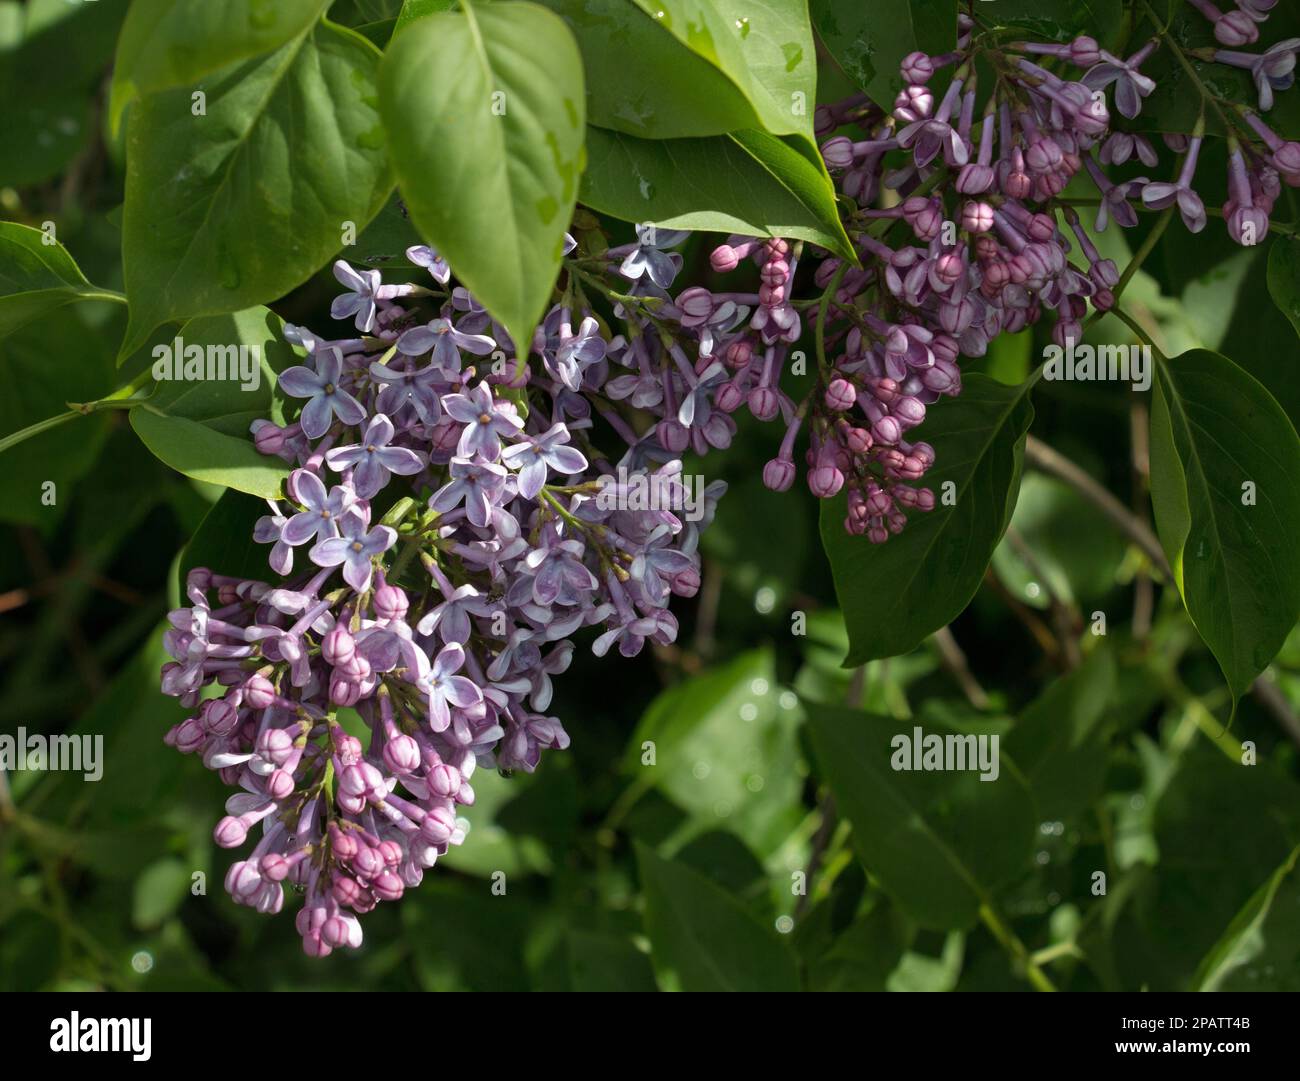 Die lila Blüten des Fliederbaumes, Syringa vulgaris „Präsident Lincoln“, blühen im Frühling/Frühsommer auf einem natürlichen grünen Blatthintergrund Stockfoto